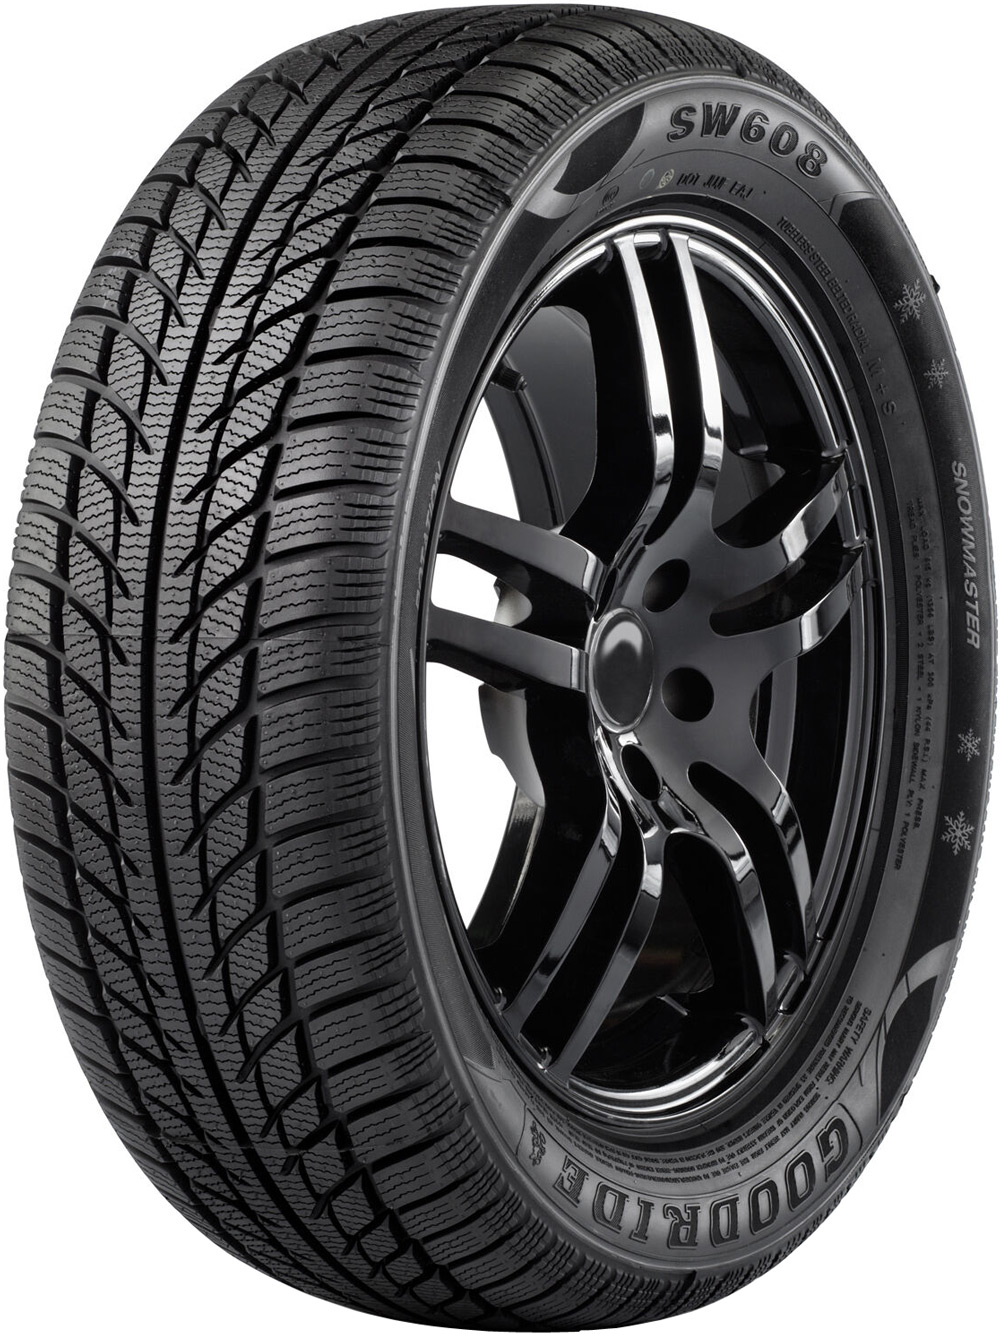 Автомобилни гуми GOODRIDE SW608 XL 245/40 R17 95V